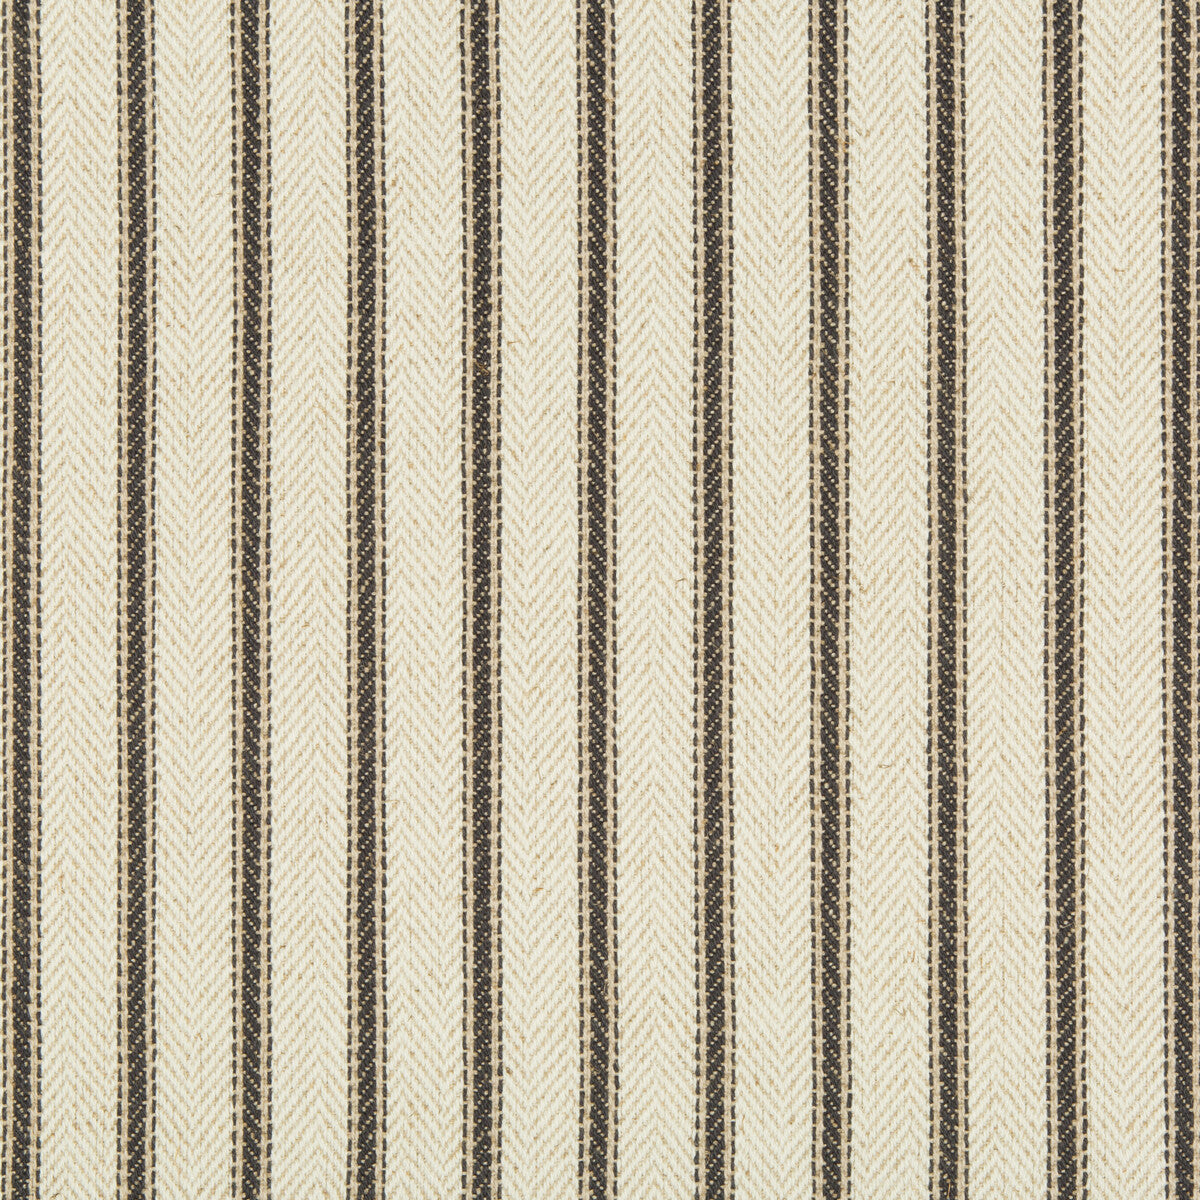 Kravet Basics fabric in 34896-1121 color - pattern 34896.1121.0 - by Kravet Basics